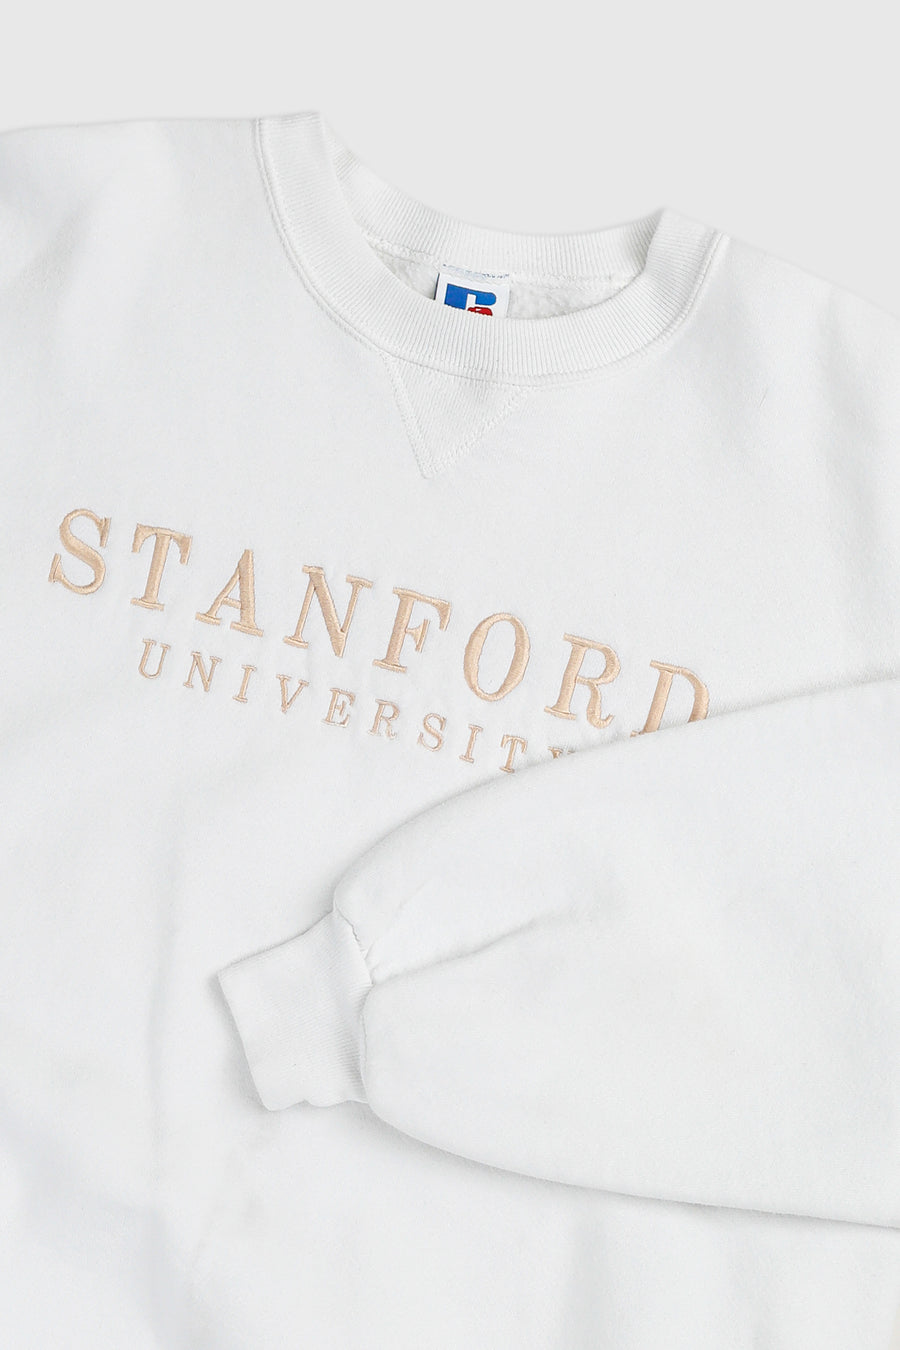 Vintage Stanford Sweatshirt - XL